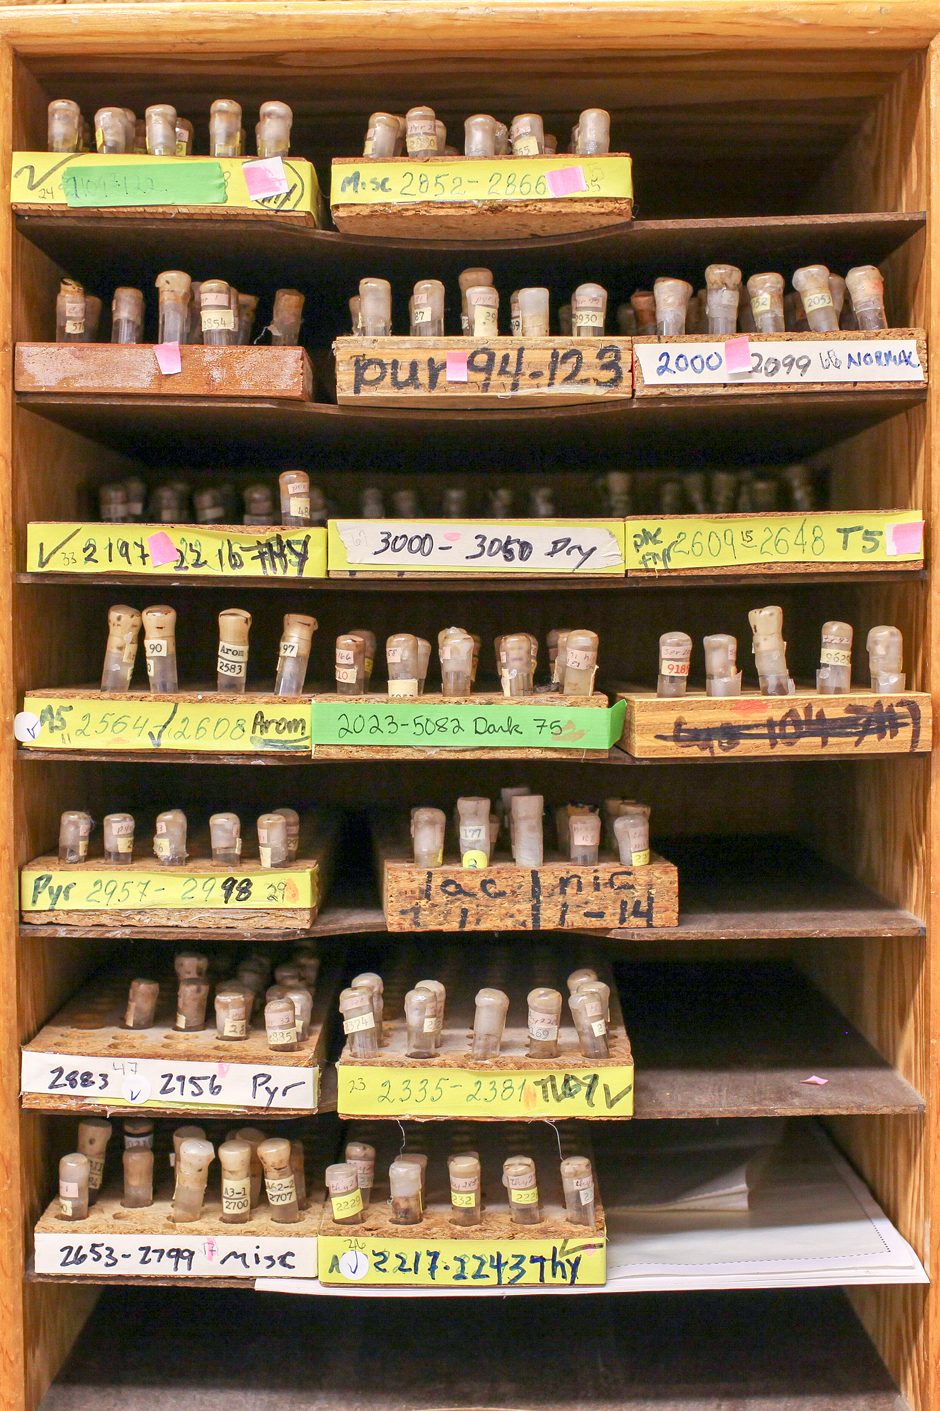 Closet full of bacteria vials